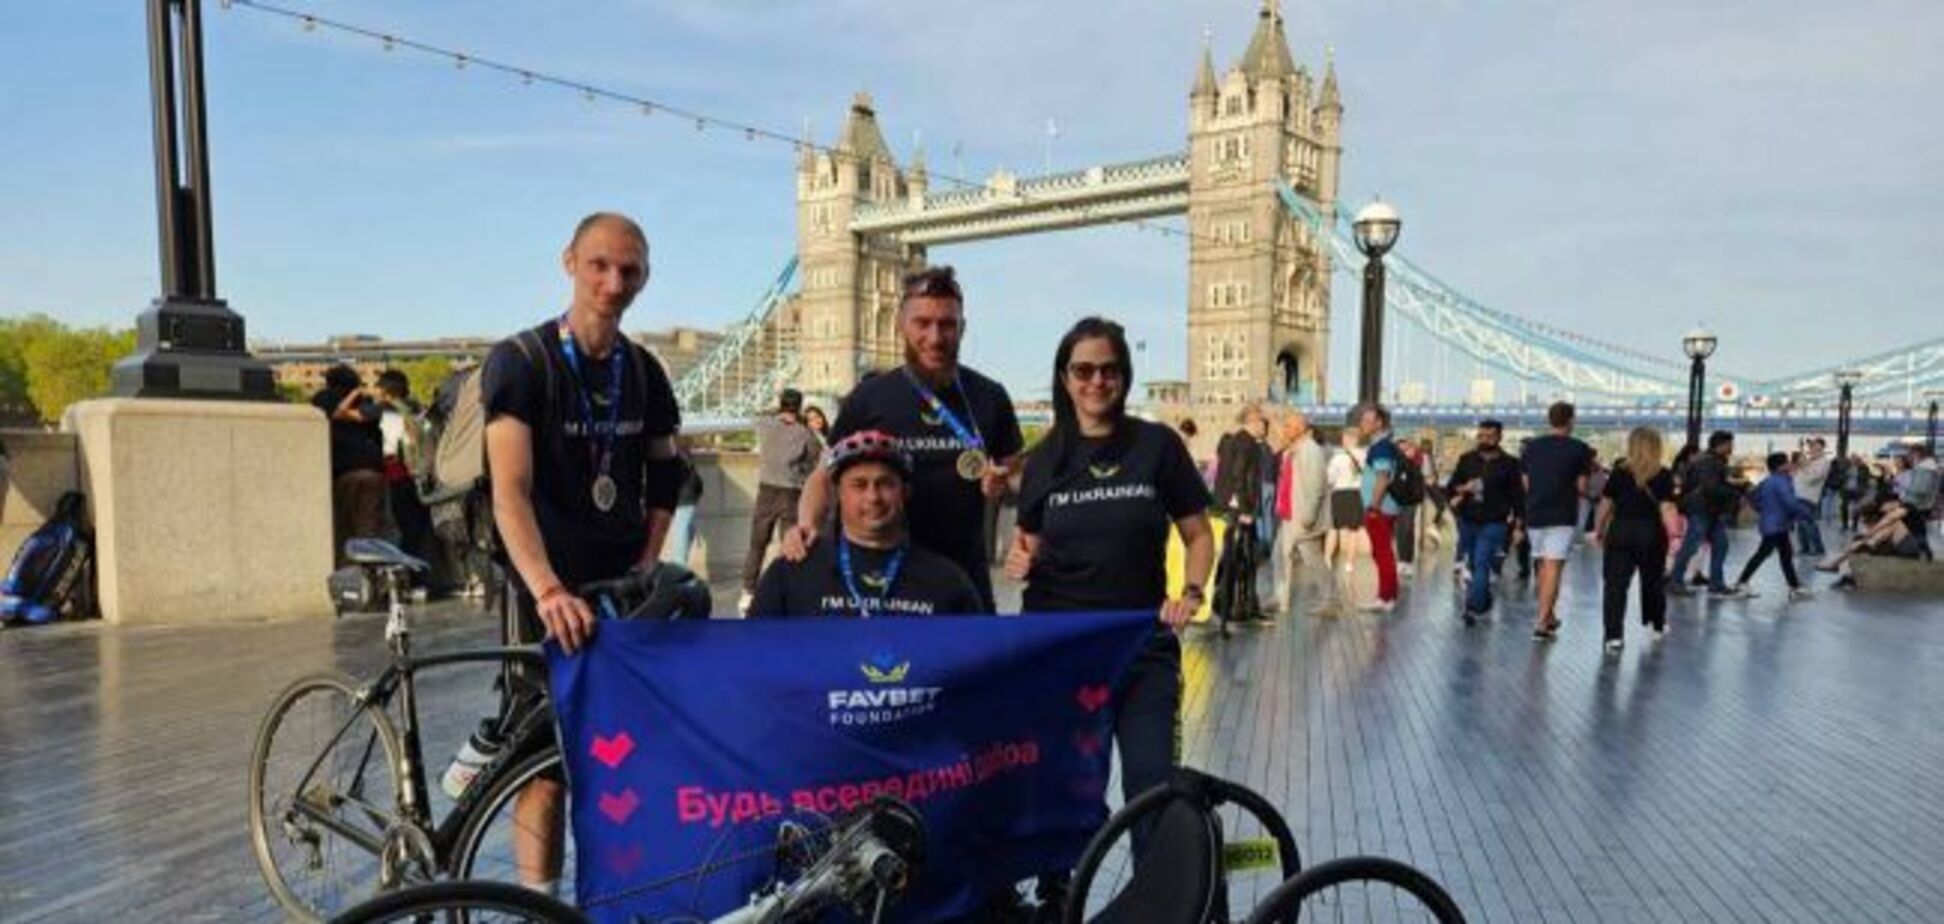 Favbet Foundation допоміг українській команді взяти участь у велопробізі в Лондоні